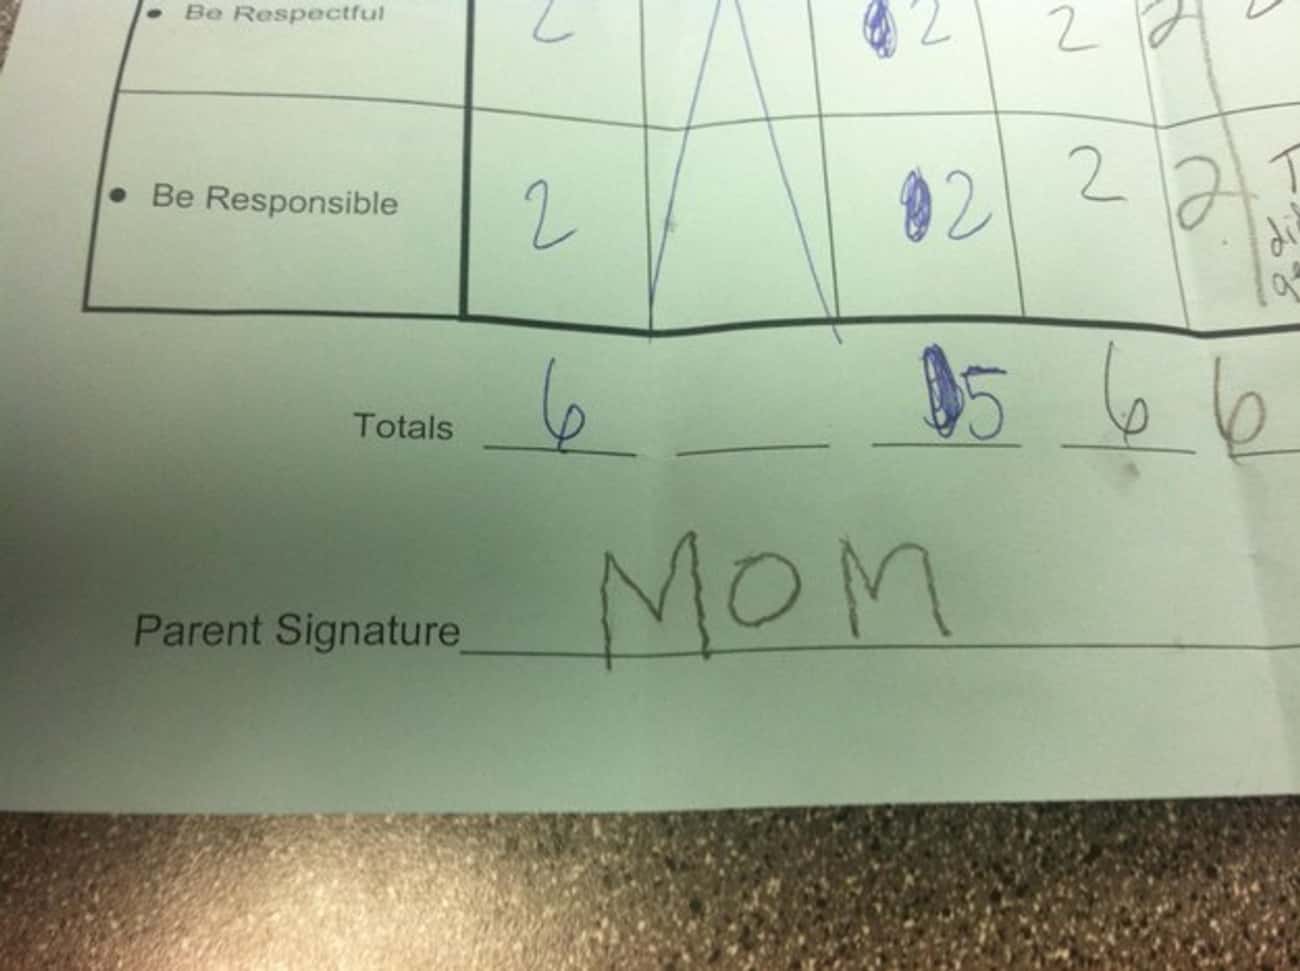 An Authentic Parents' Signature